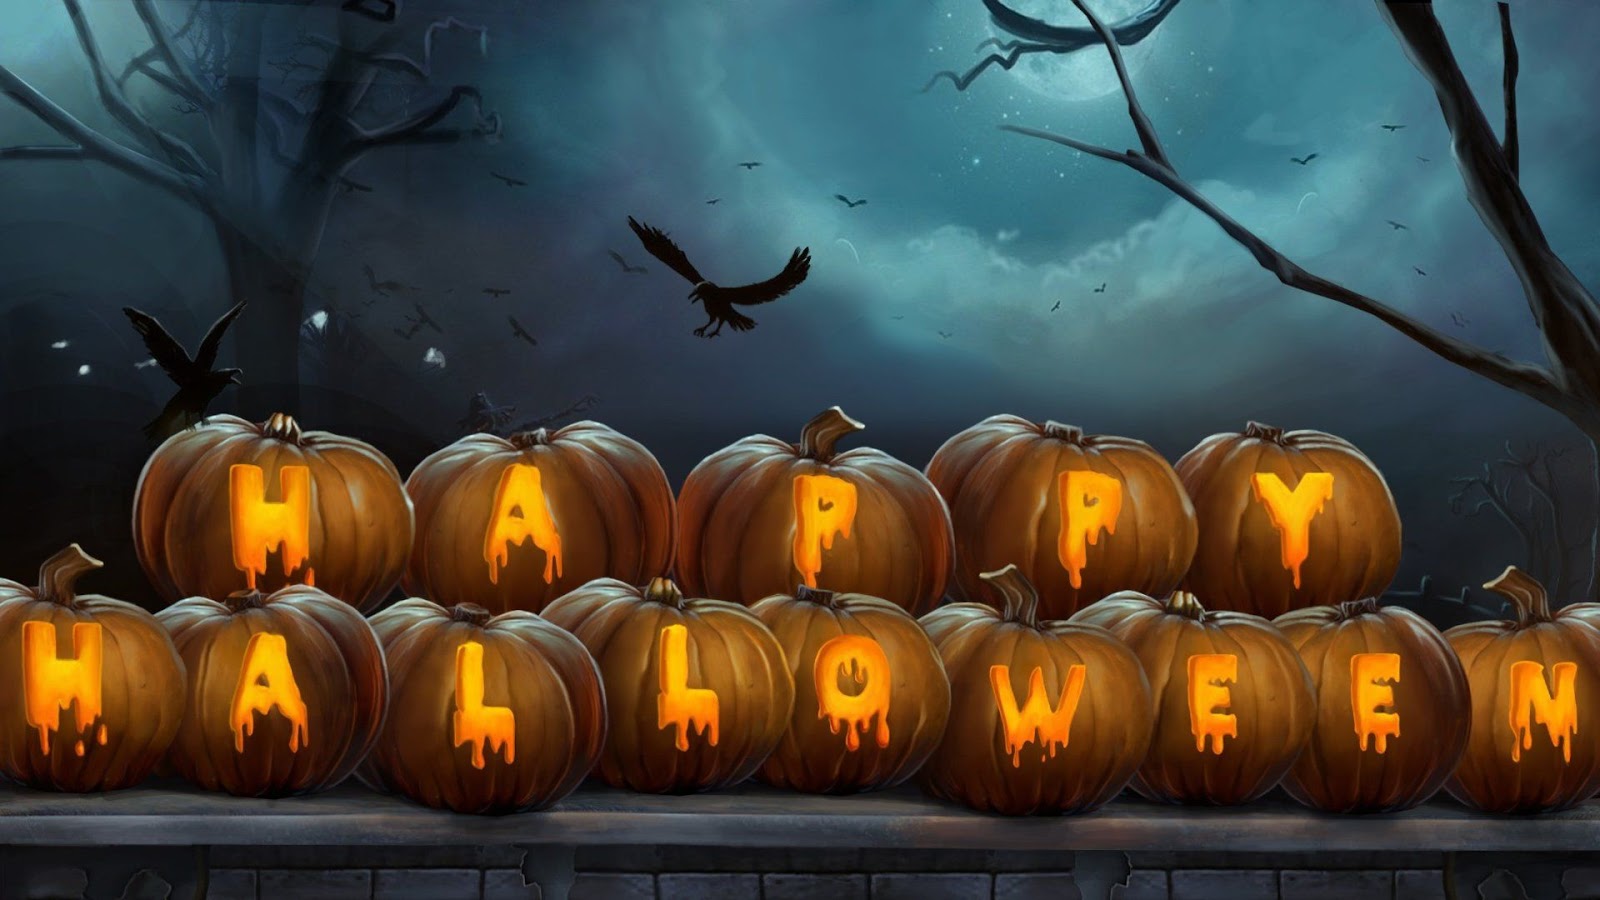 Bons jogos de terror para conferir no Halloween!